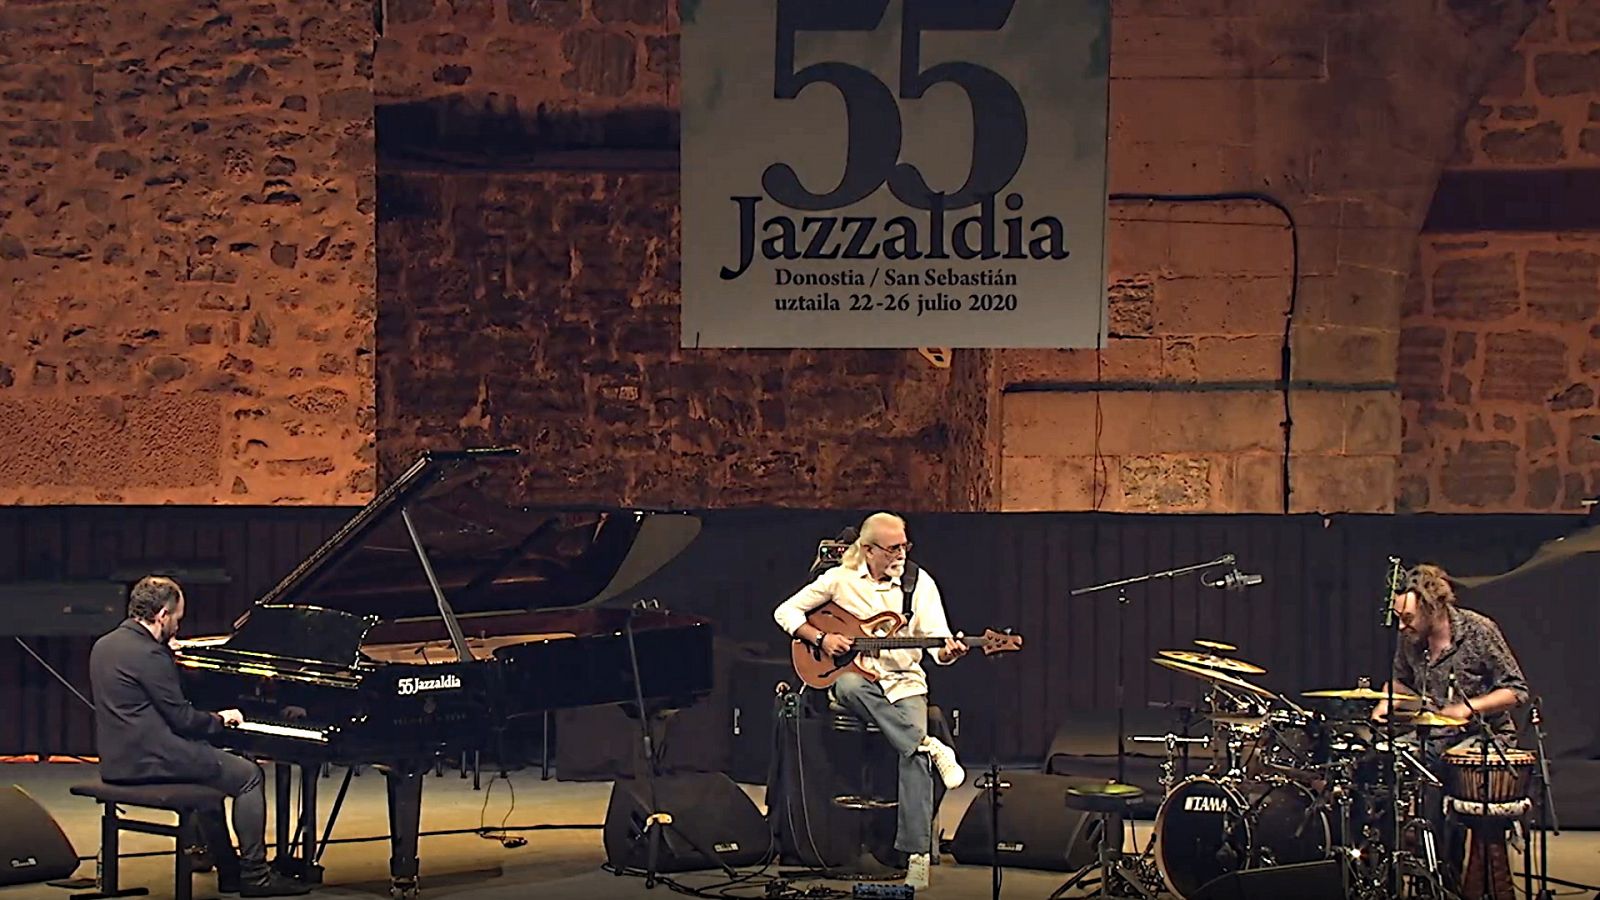 Festivales de verano de La 2 - 55º Jazzaldia: Carles Benavent Trio